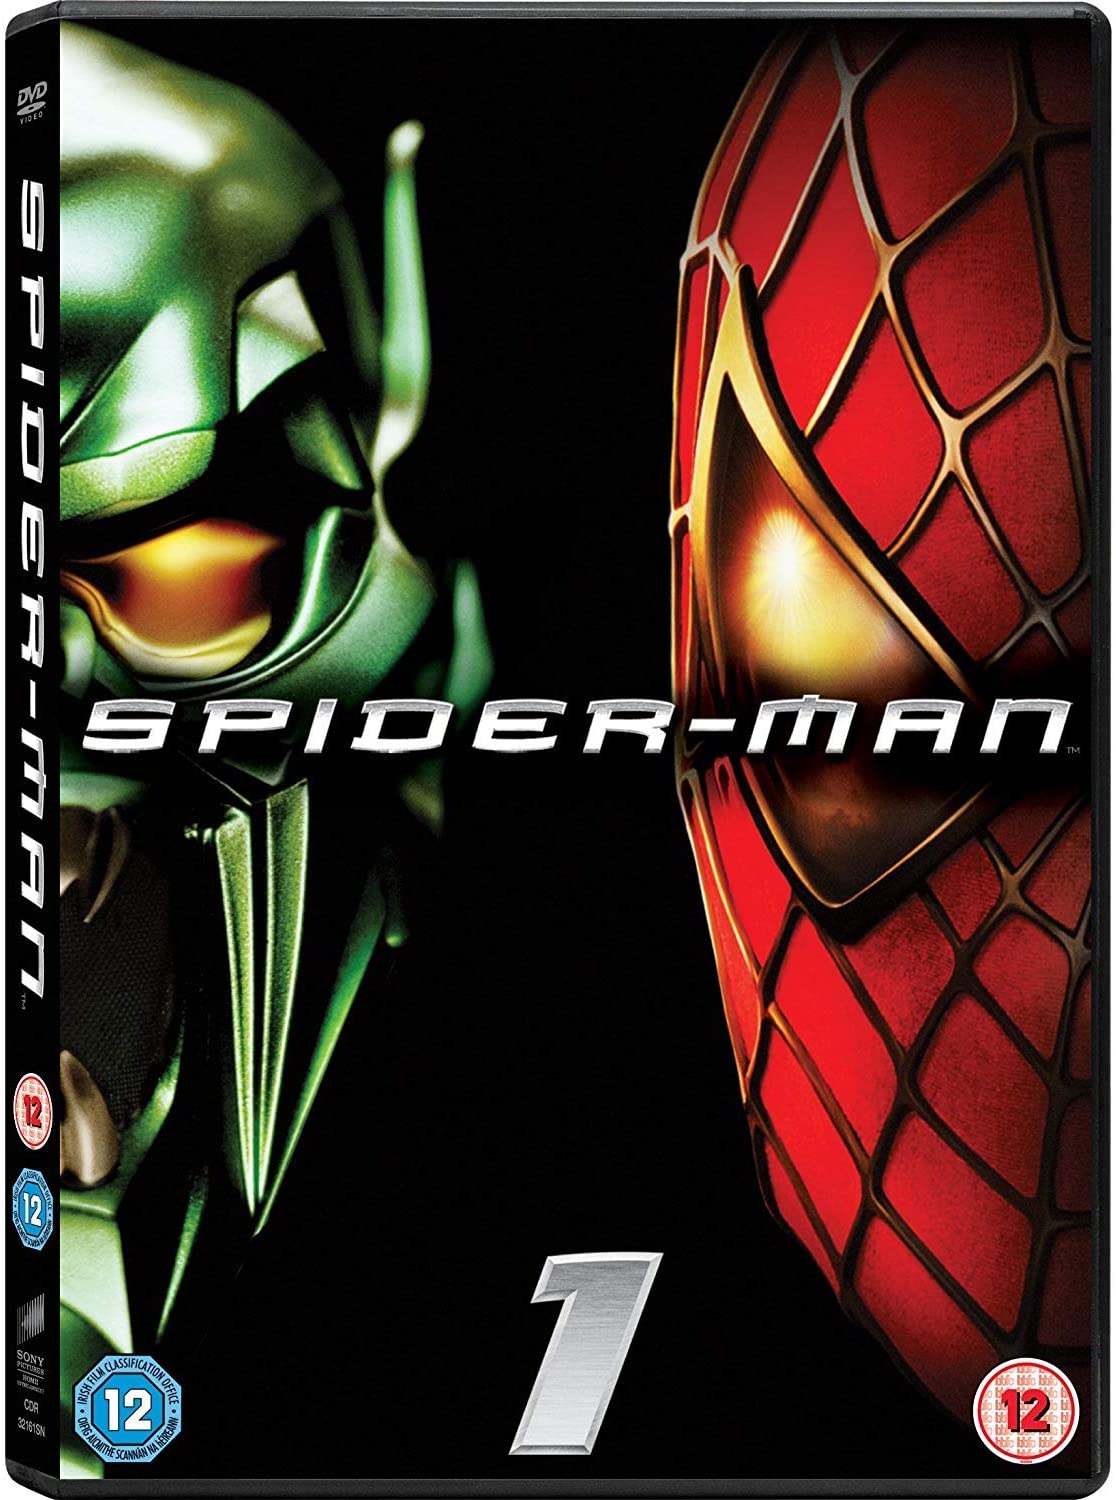 Spider-man [DVD]